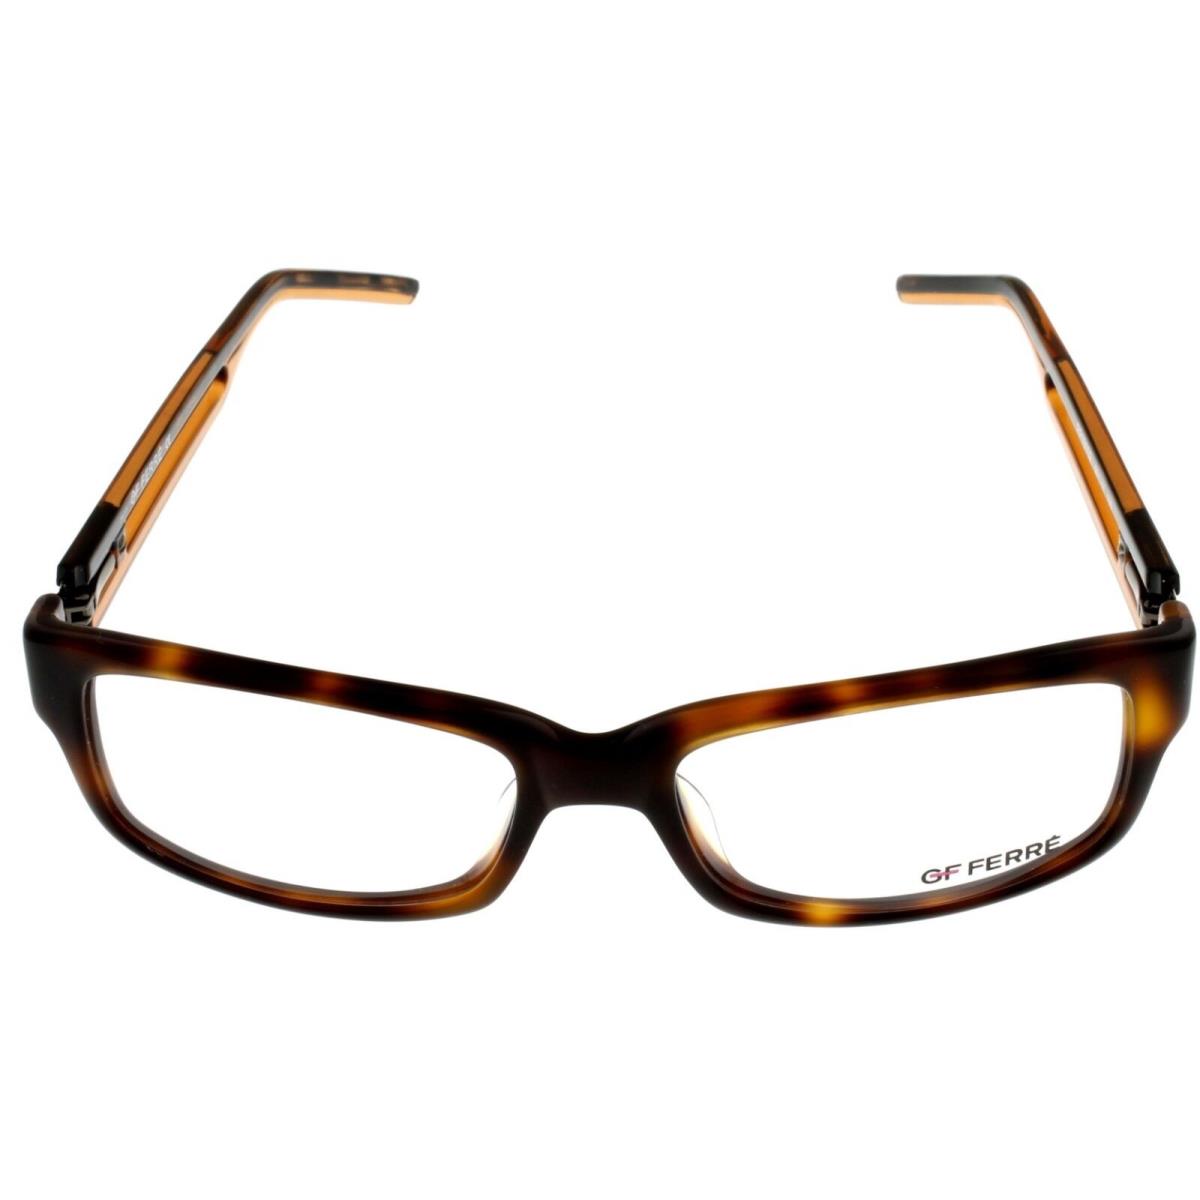 Gianfranco Ferre Eyeglasses Frame Unisex Havana Brown Rectangular FF 18102